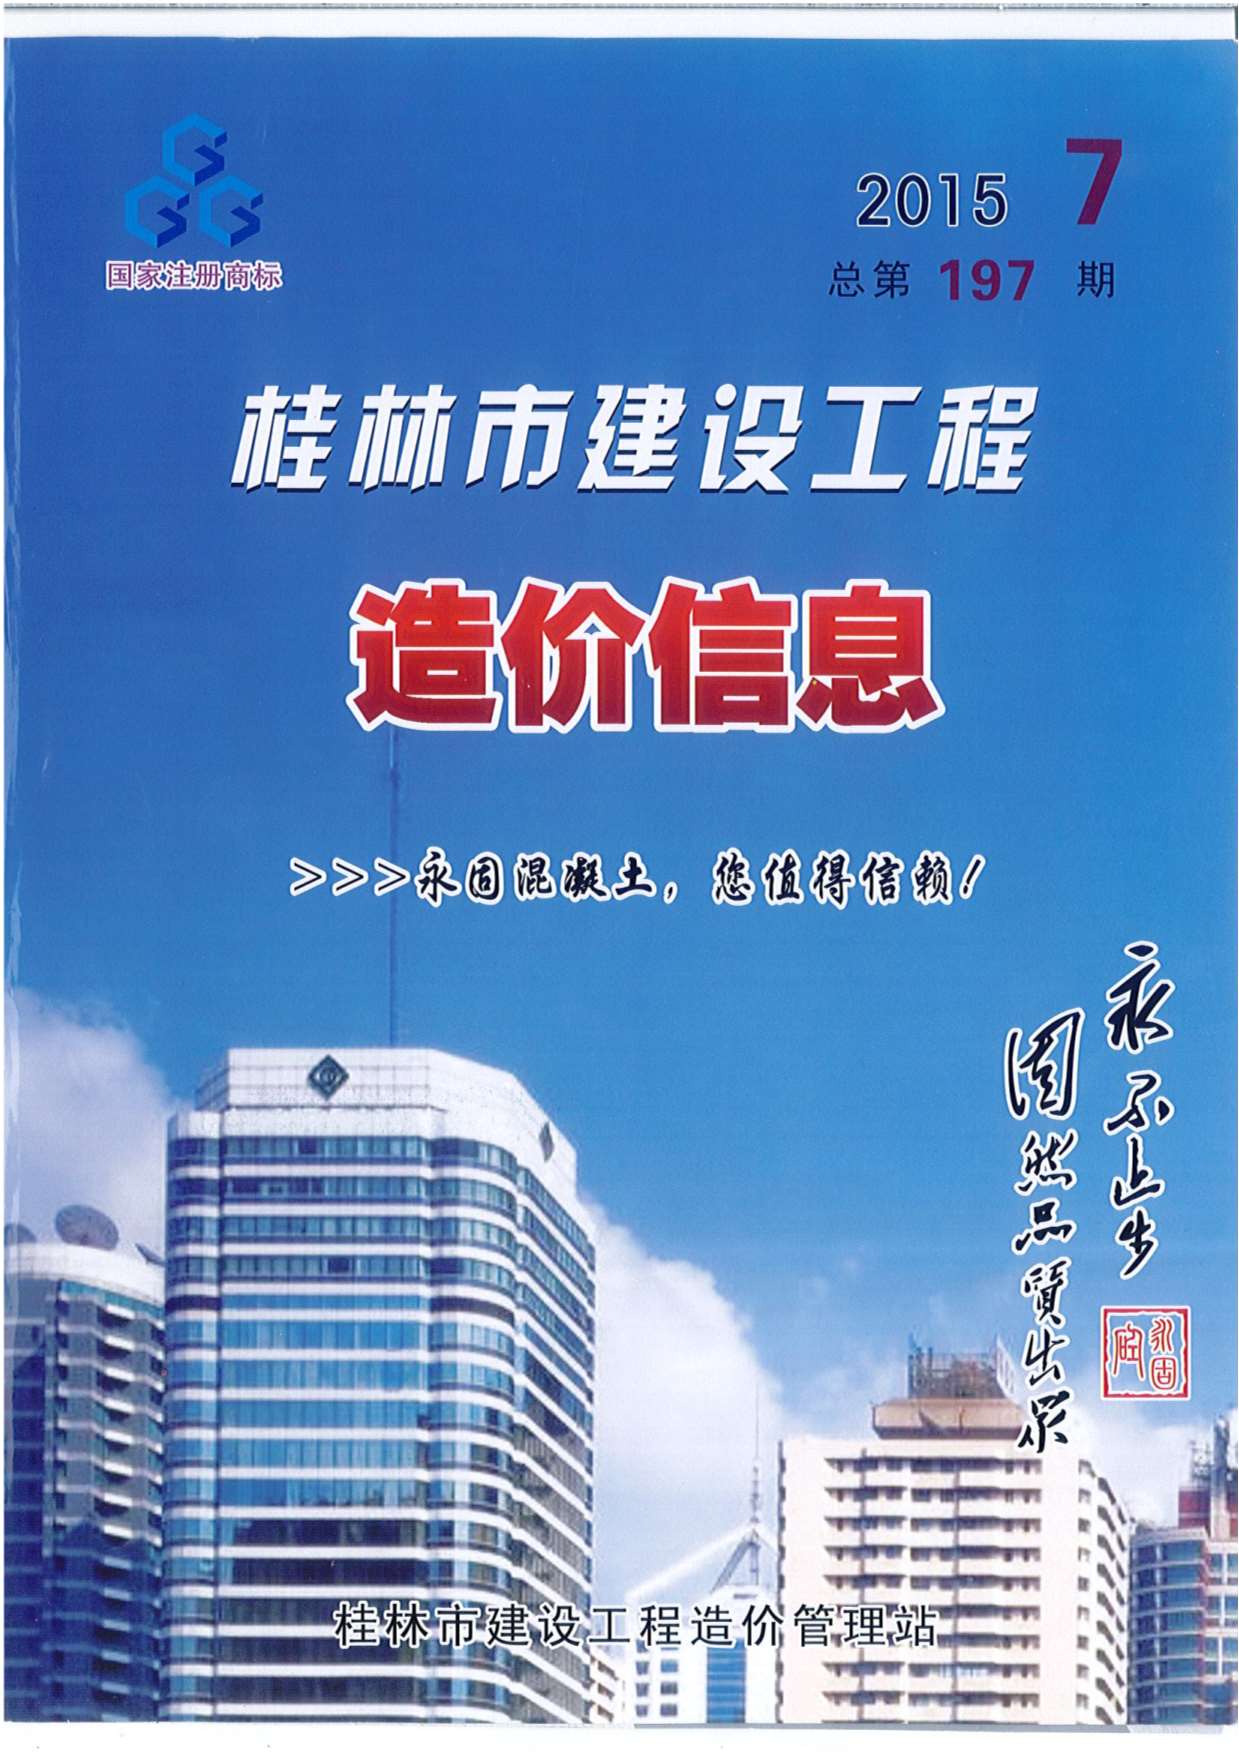 桂林市2015年7月建设工程造价信息